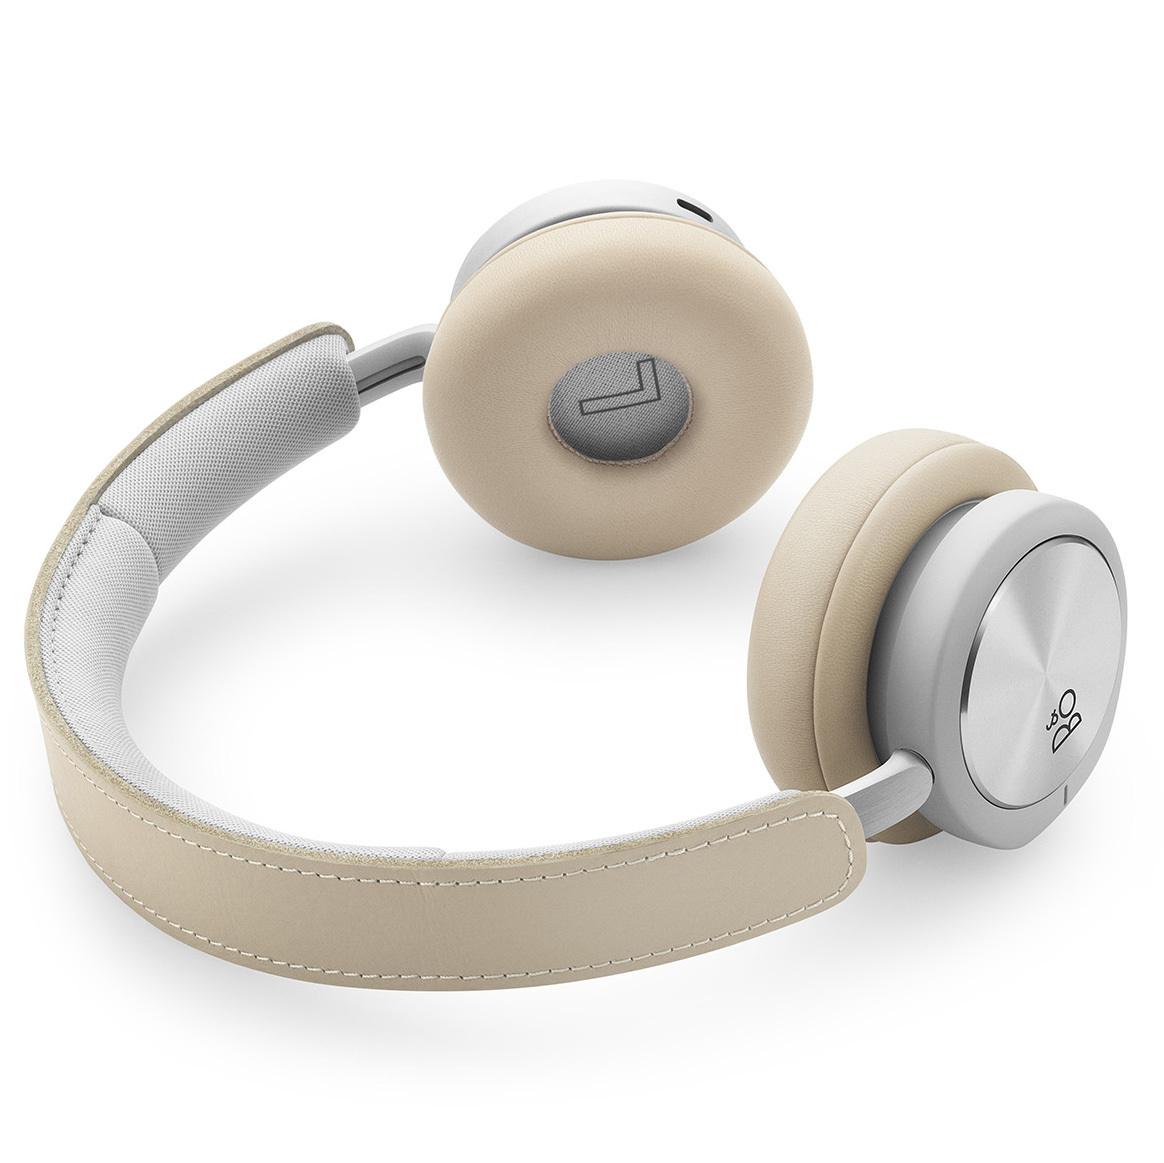 Tai nghe - Headphone Bang & Olufsen Beoplay H8i